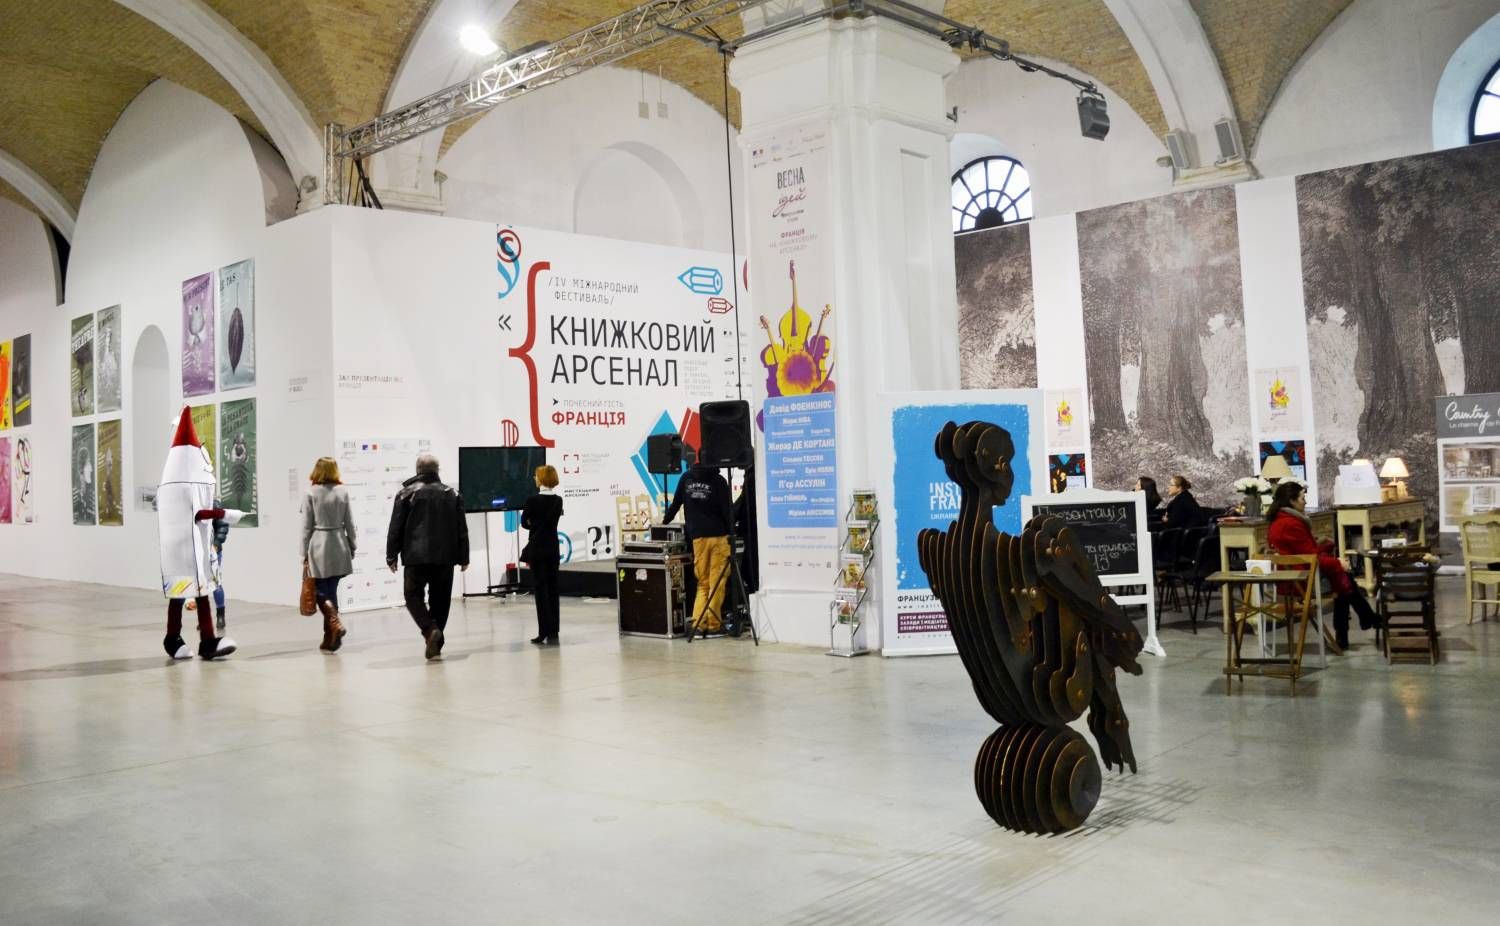 У Києві стартував літературний фестиваль "Книжковий арсенал"